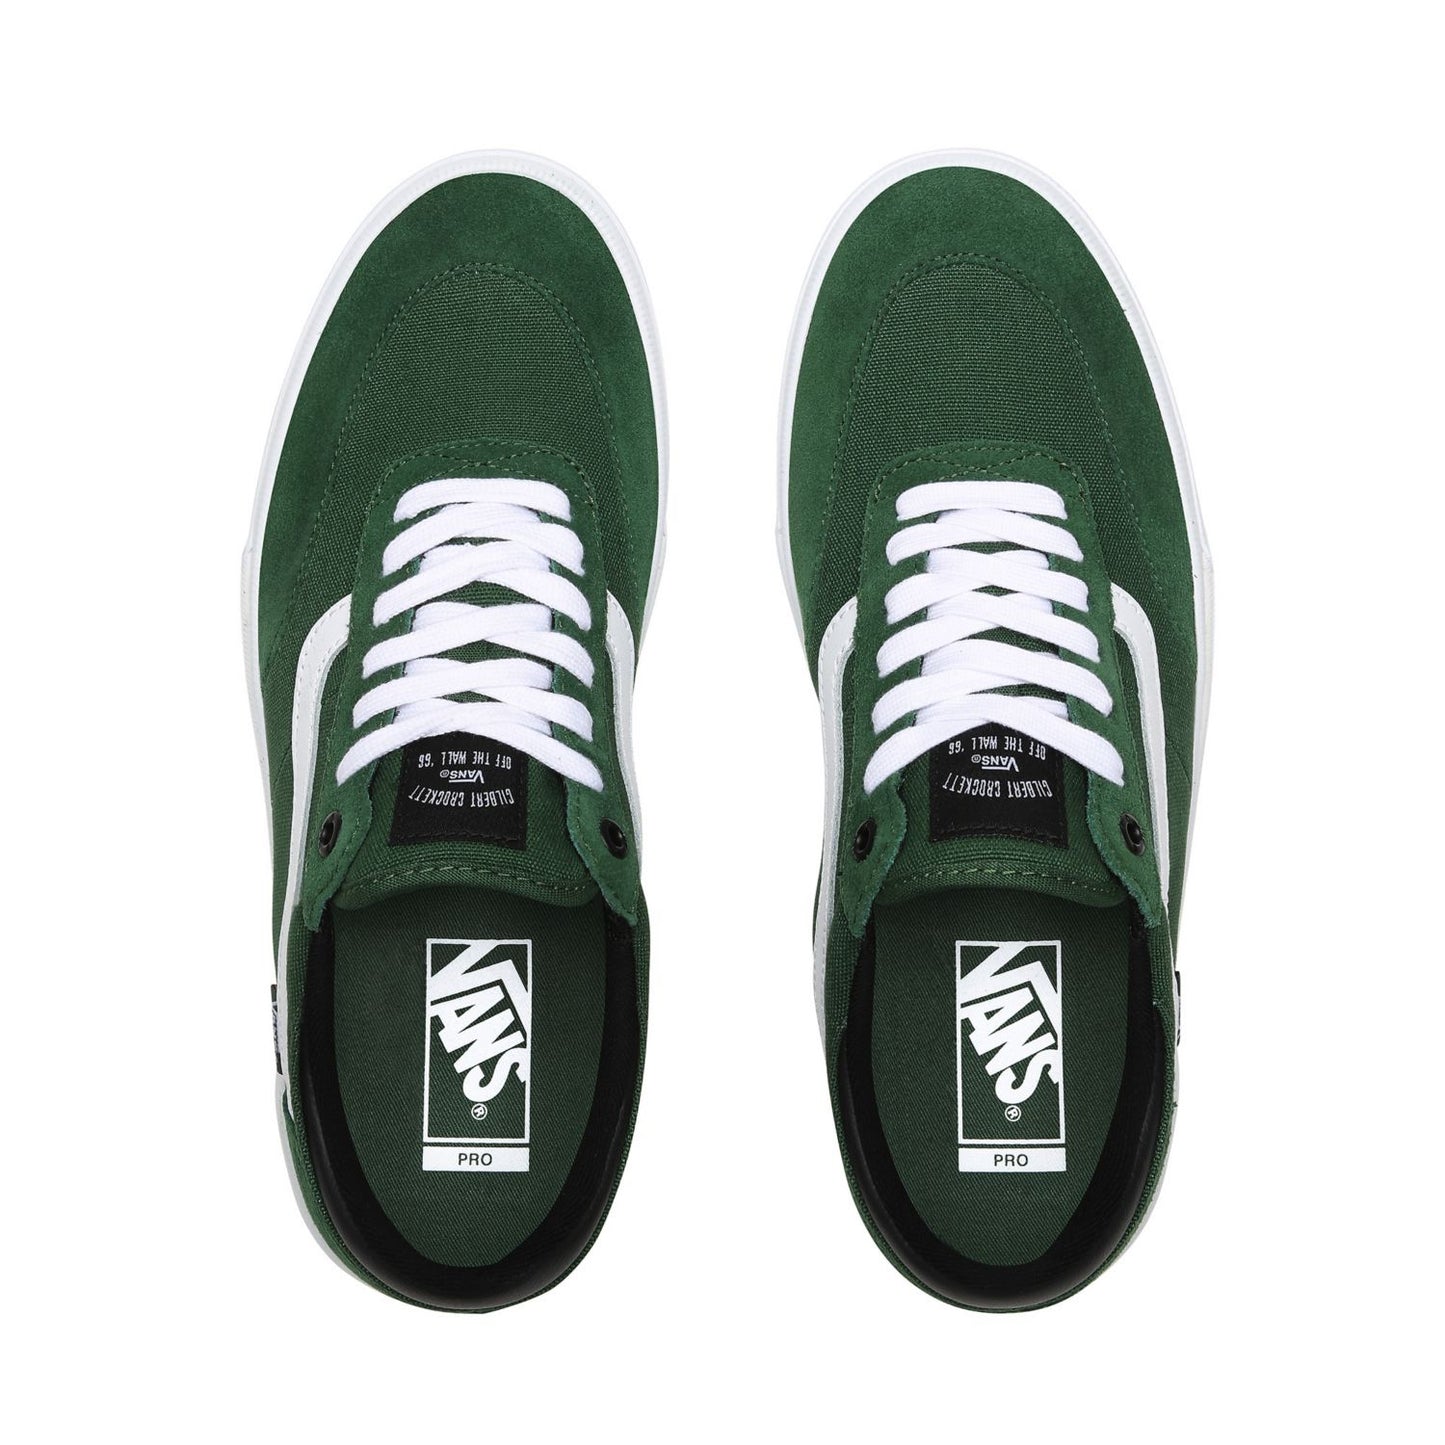 Vans 'Gilbert Crockett' Skate Shoes (Green / White)